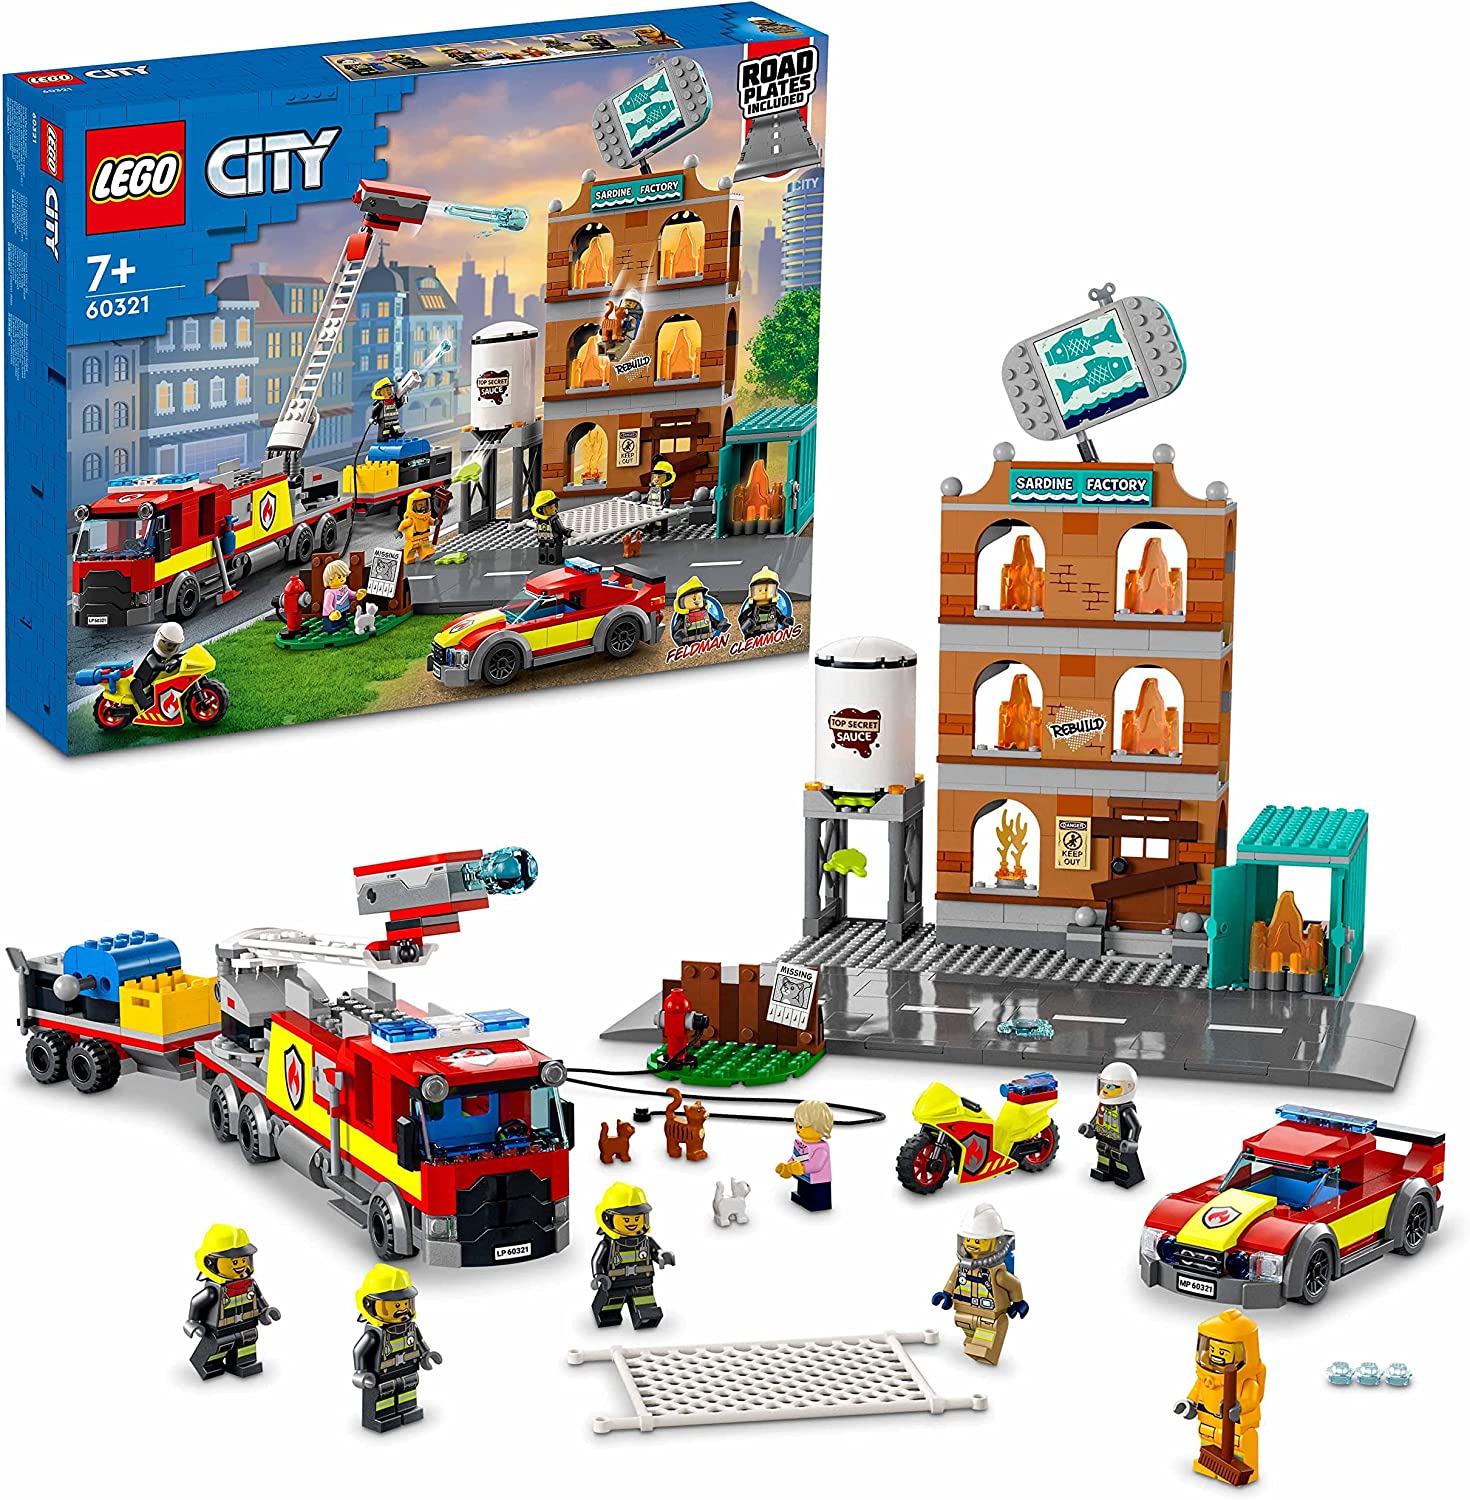 LEGO 60321 City Feuerwehreinsatz mit Löschtruppe, Feuerwehr-Spielzeug mit Feuerwehrauto und Minifiguren für Jungen und Mädchen ab 7 Jahren